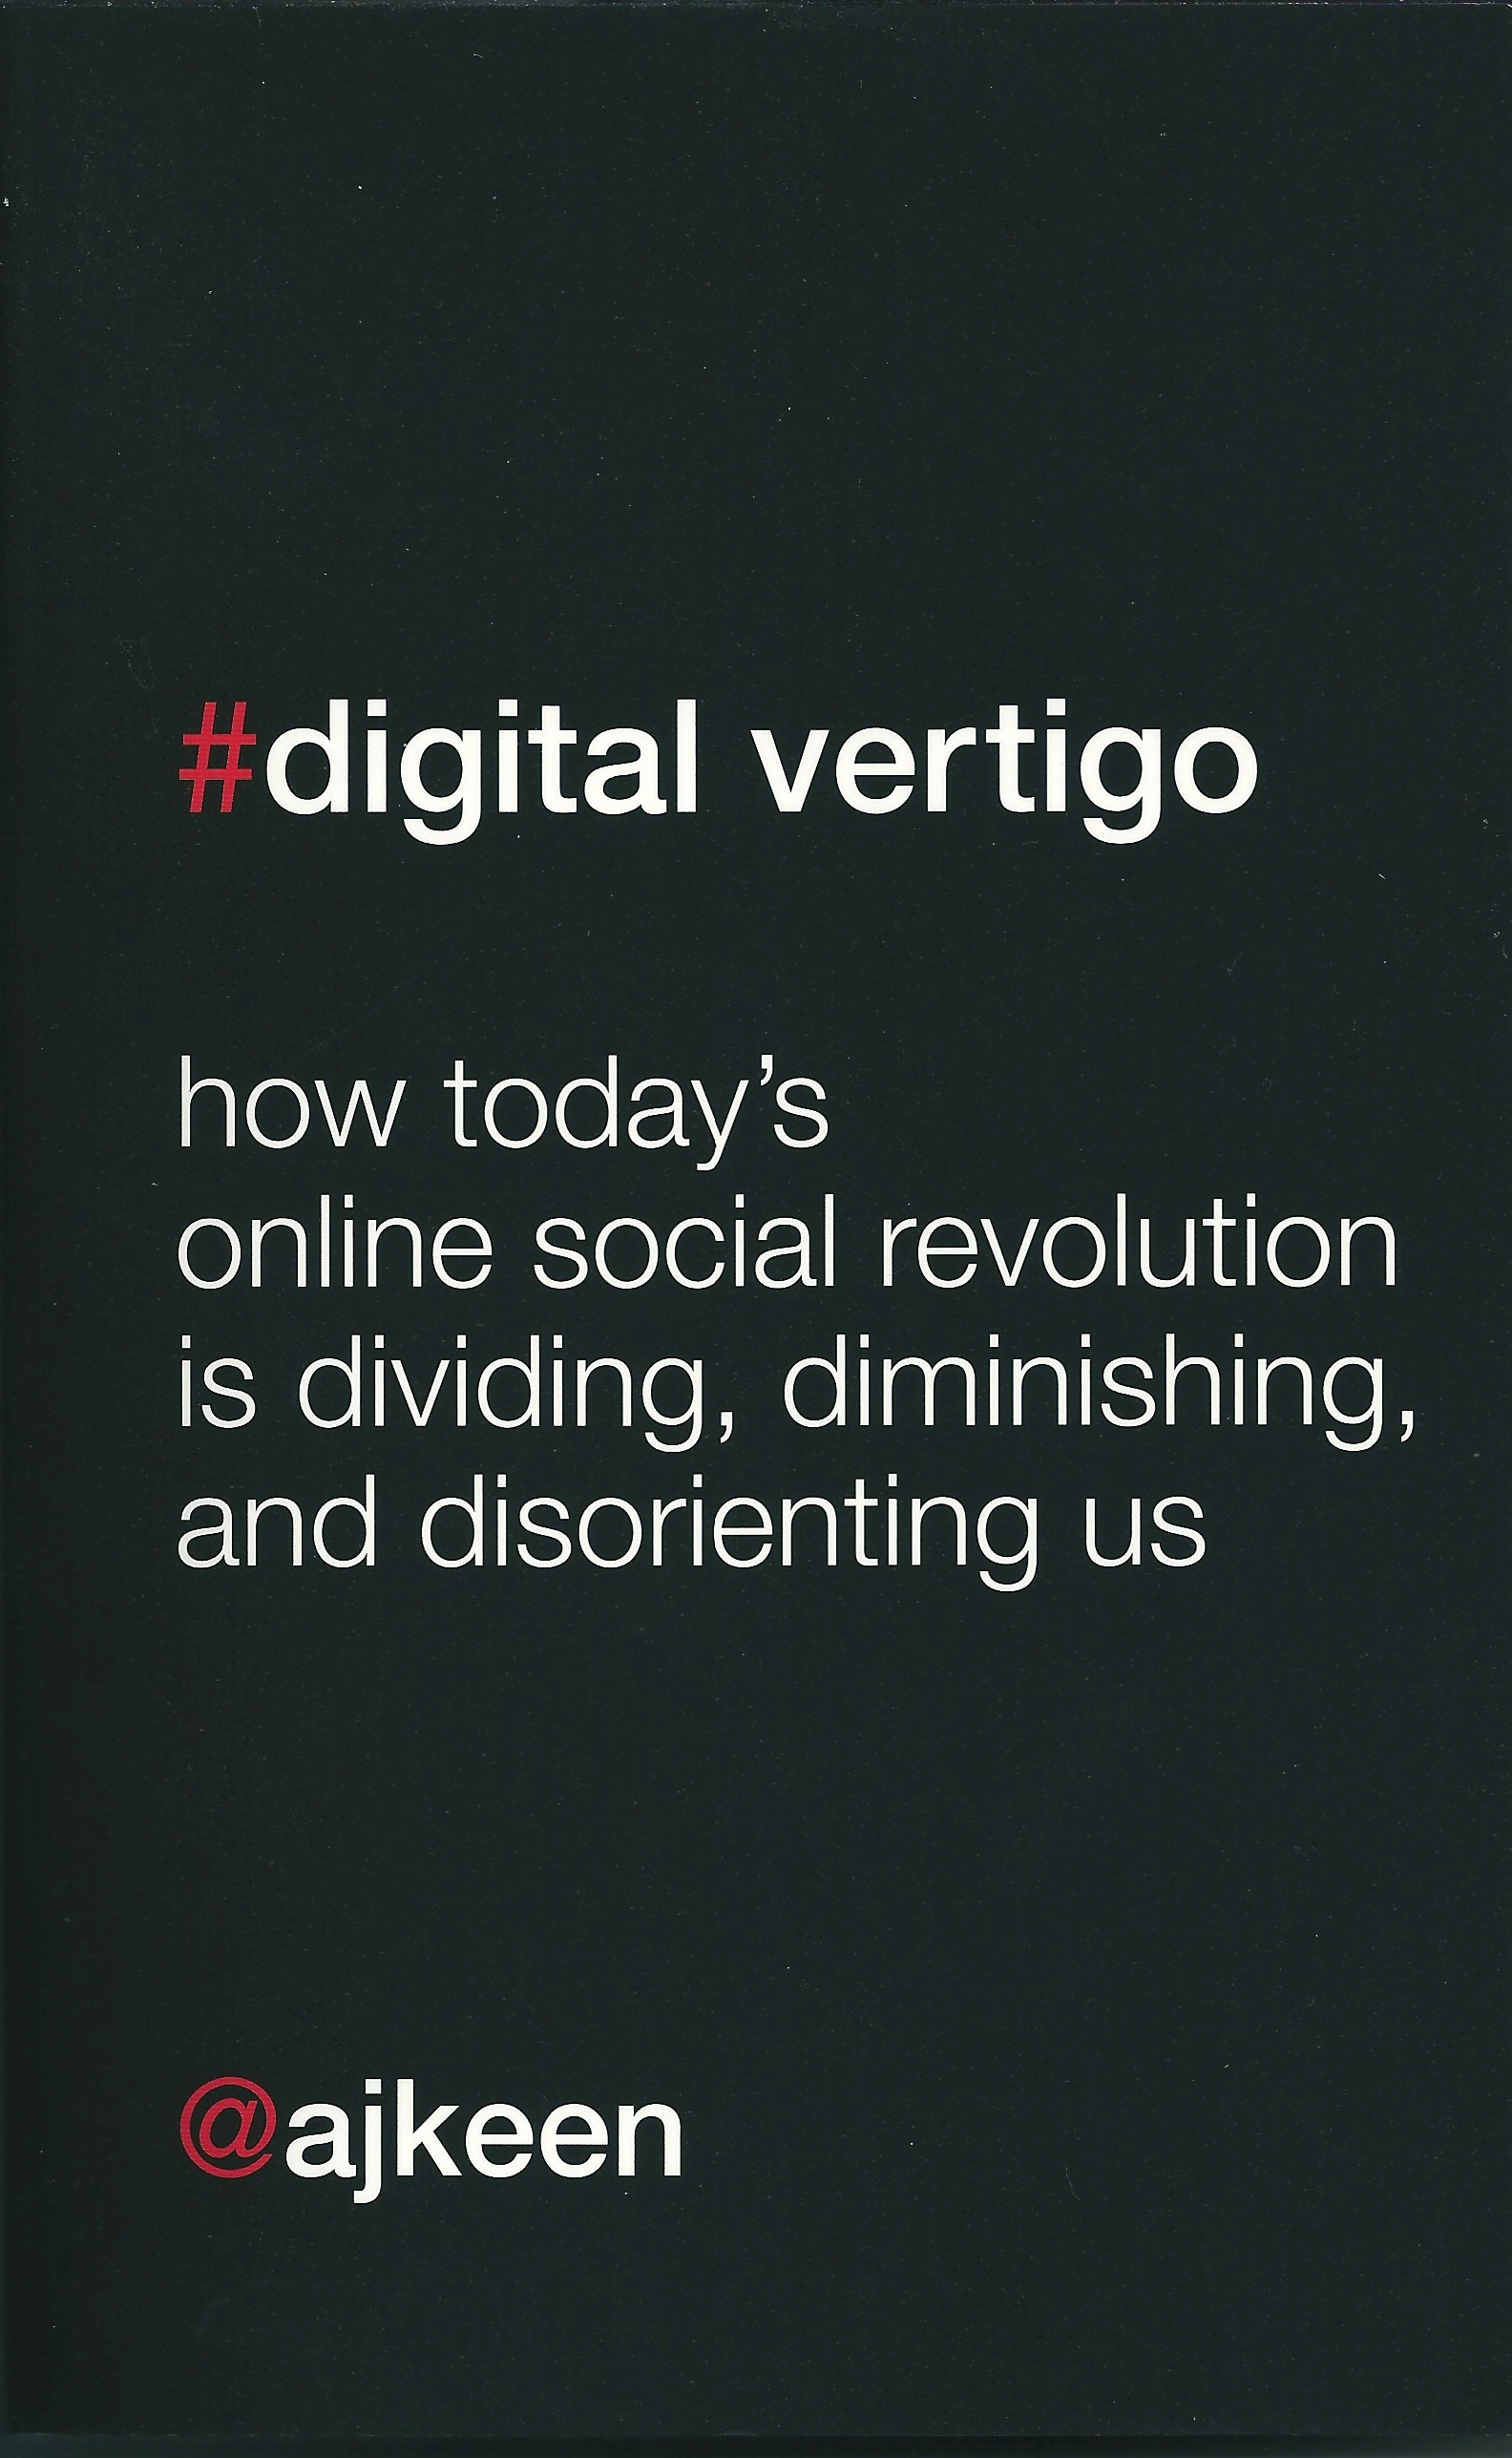 Digital vertigo (2012, St. Martin's Press)